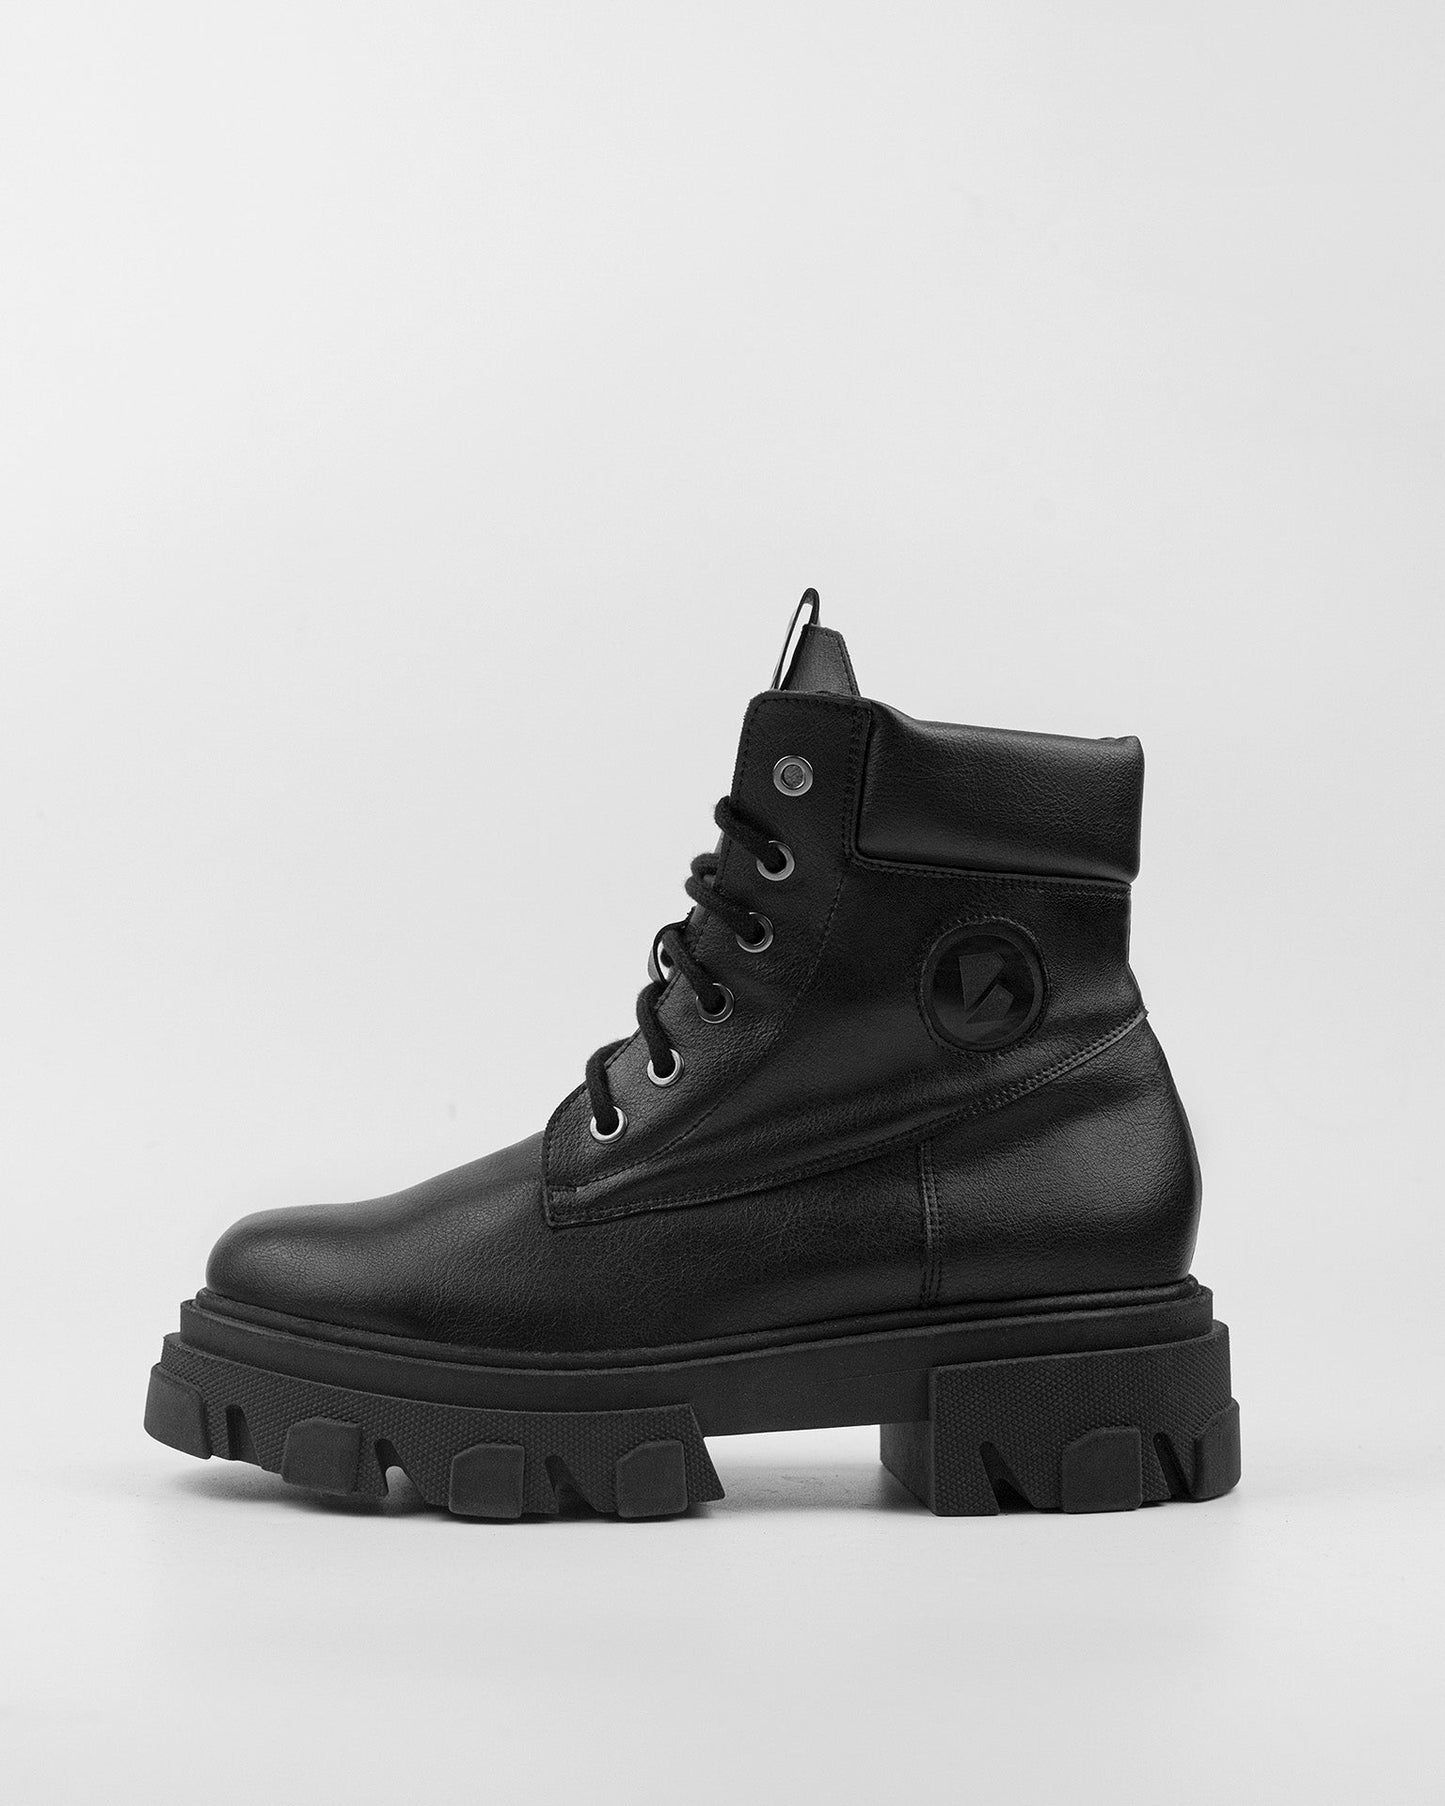 Riot Boots krótkie wegańskie botki damskie w stylu “worker boots” - model posesyjny